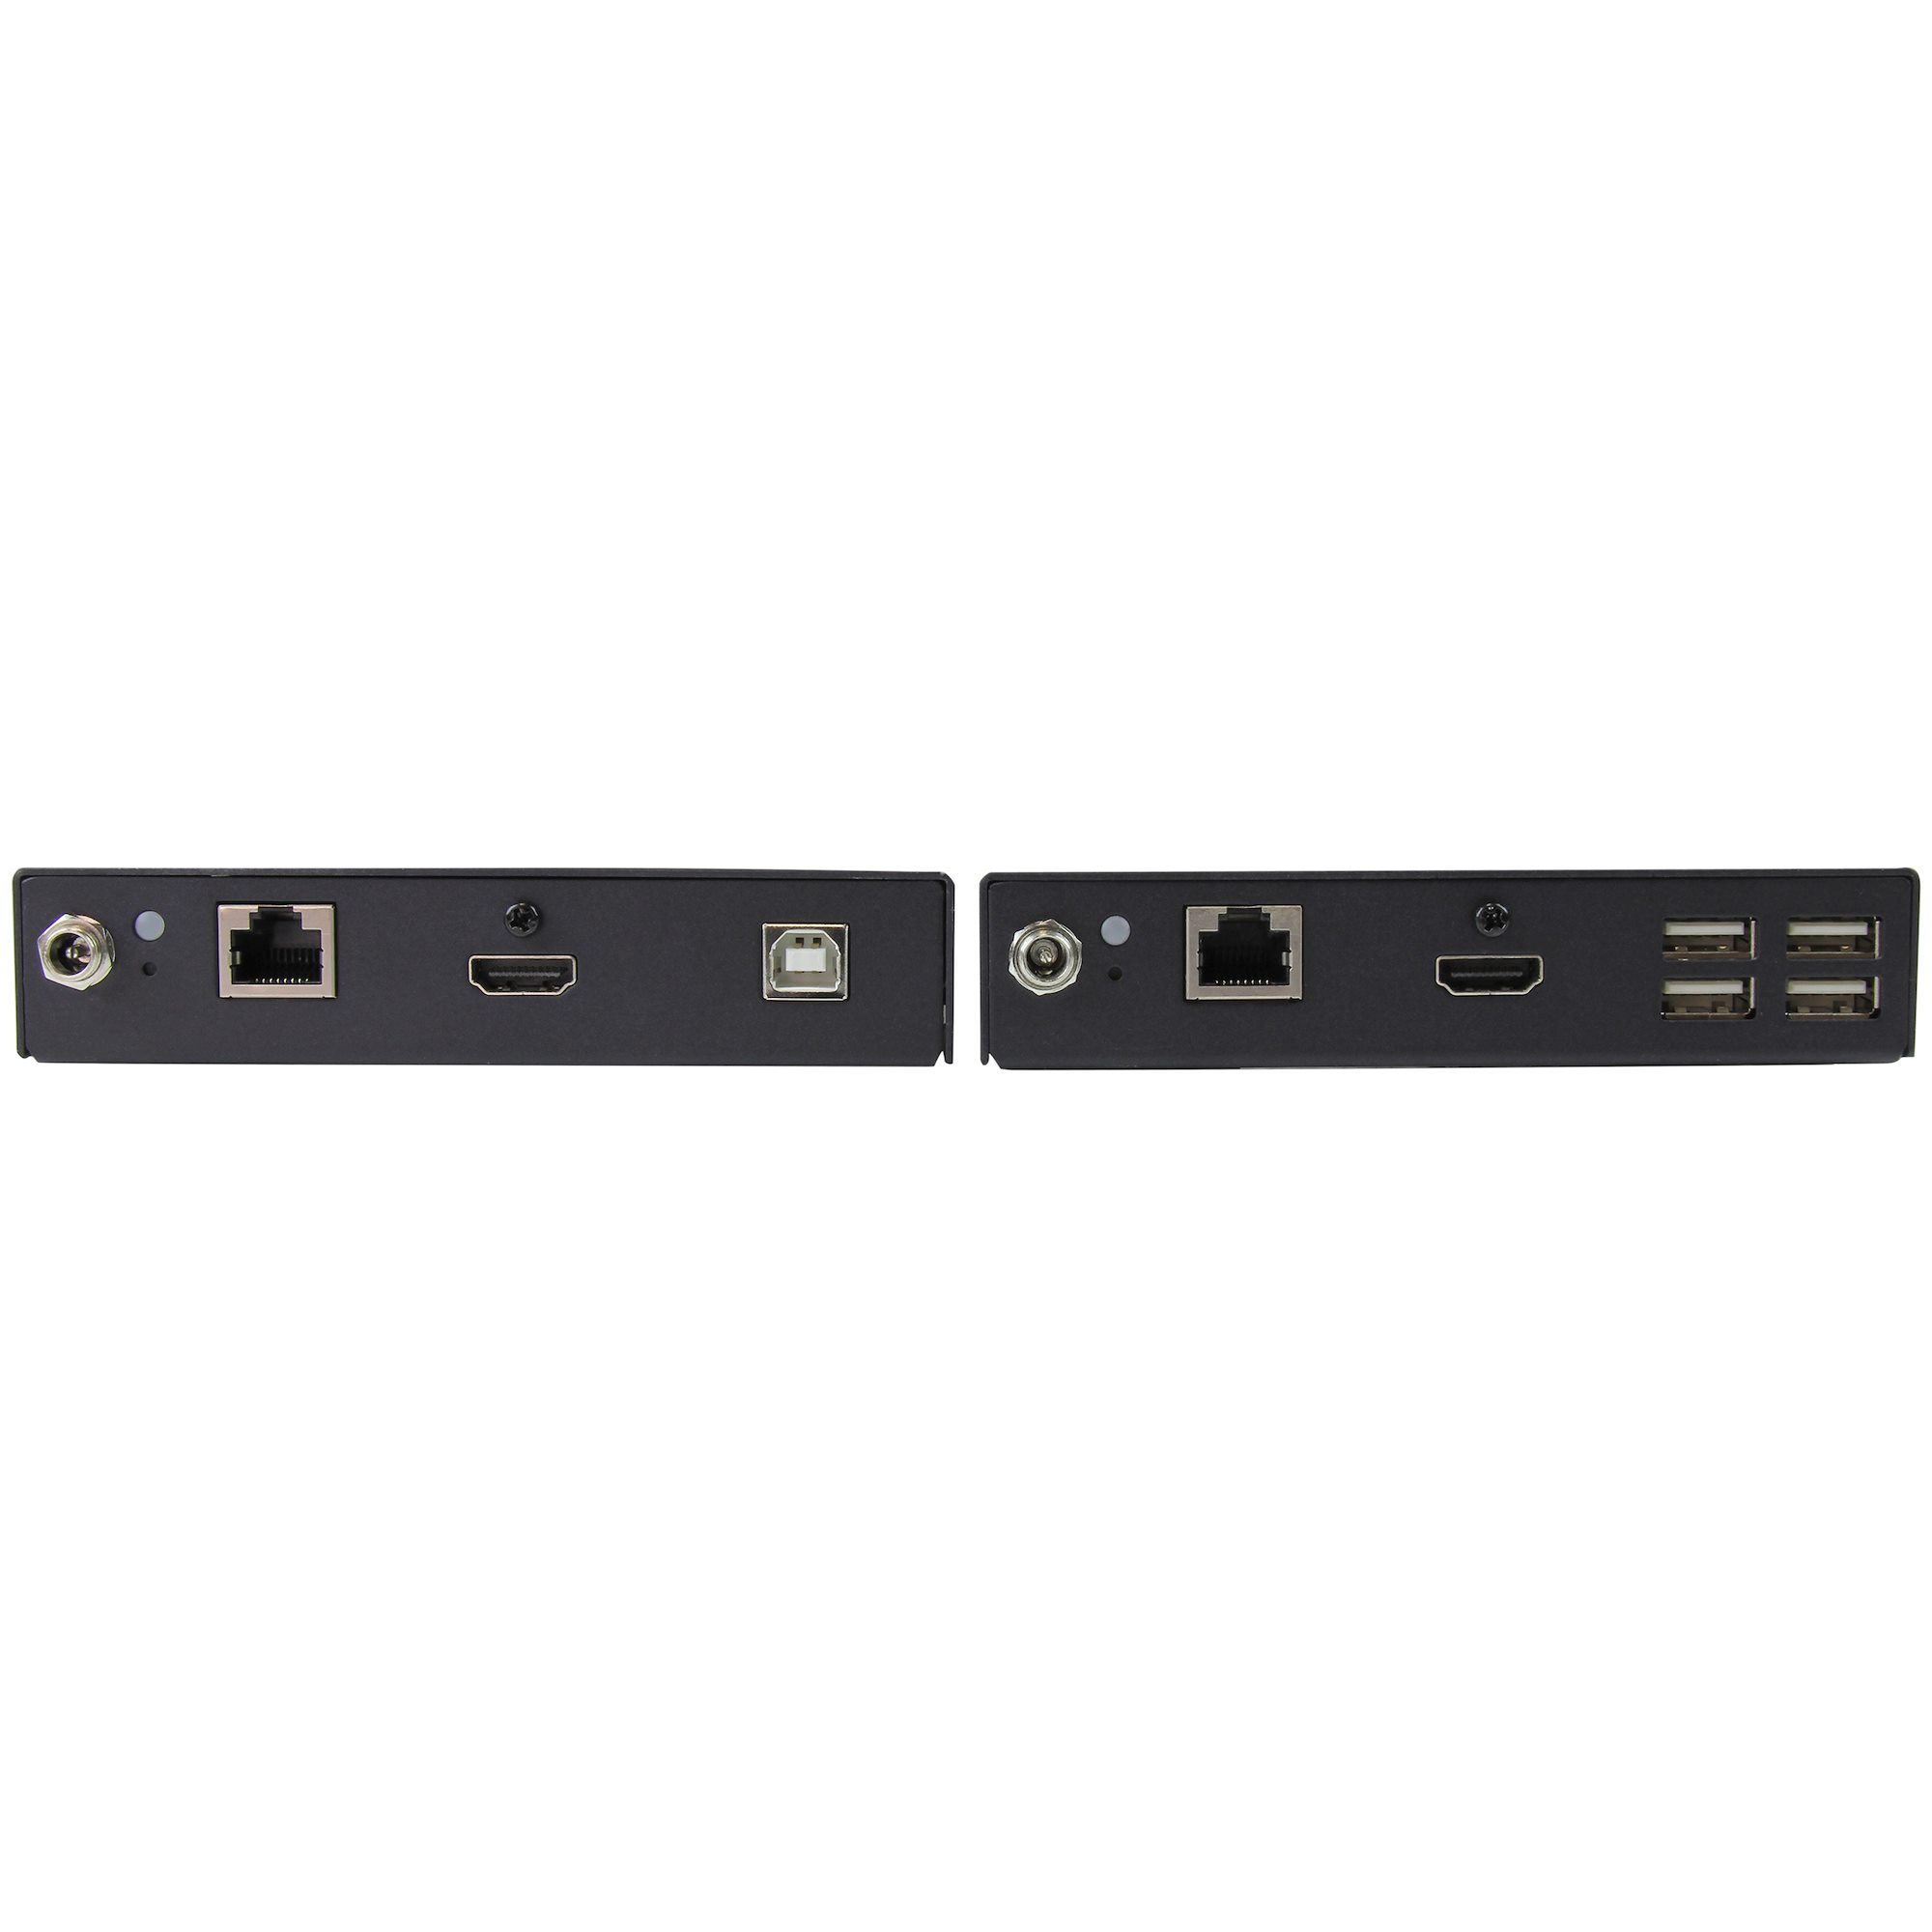 IP対応HDMI/USB 延長分配器エクステンダーキット 1080p対応 - HDMI